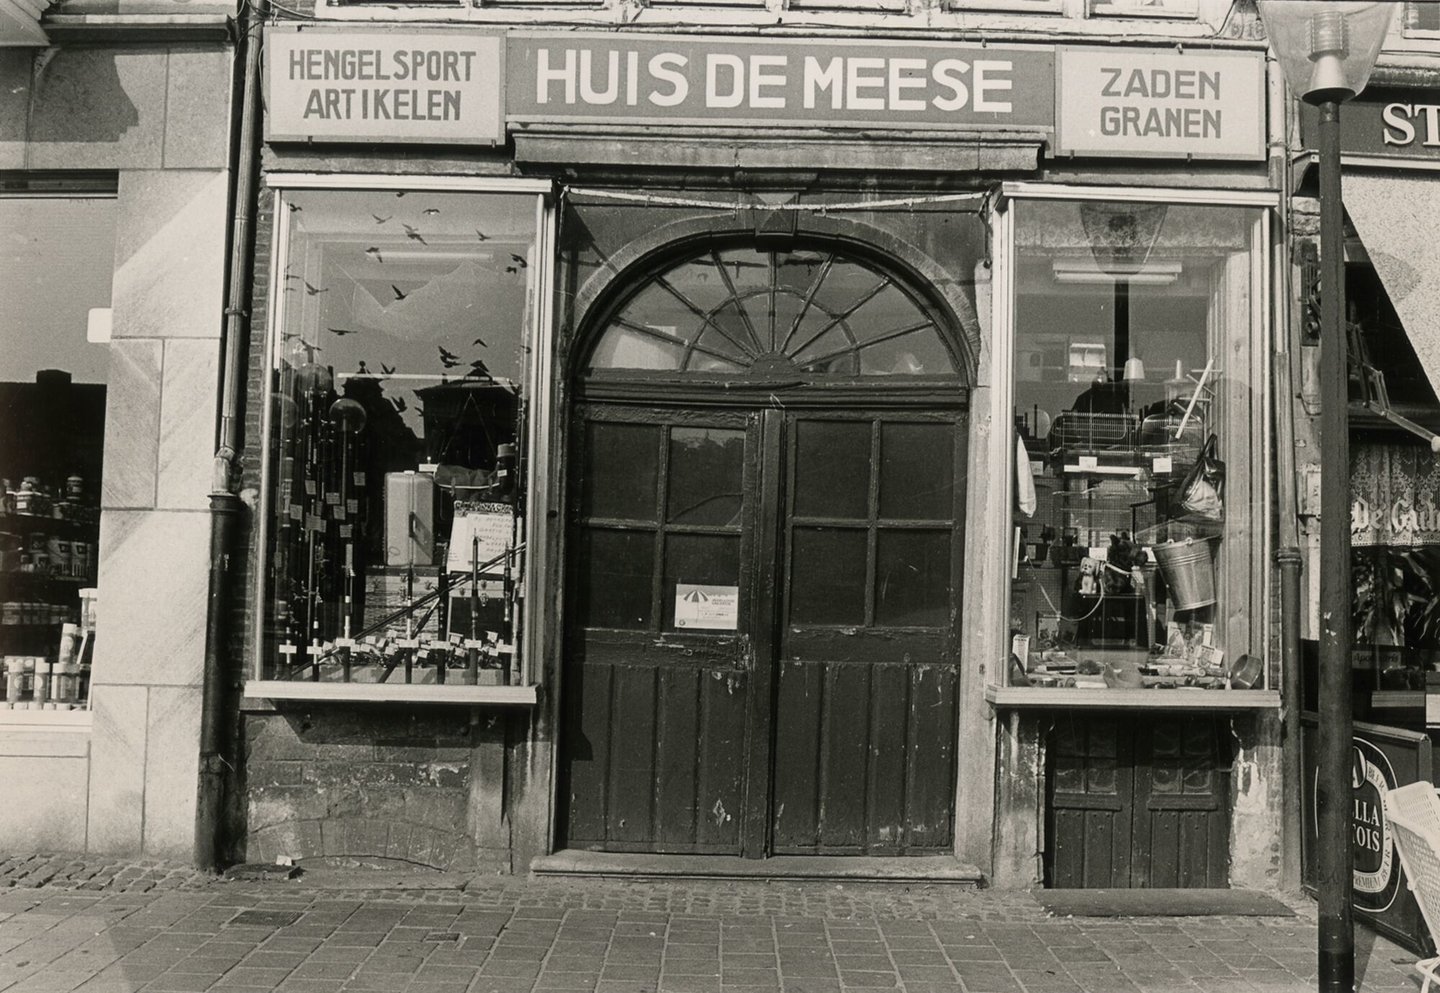 Etalage van Huis De Meese, een winkel van hengelsportartikelen, zaden en granen in Gent